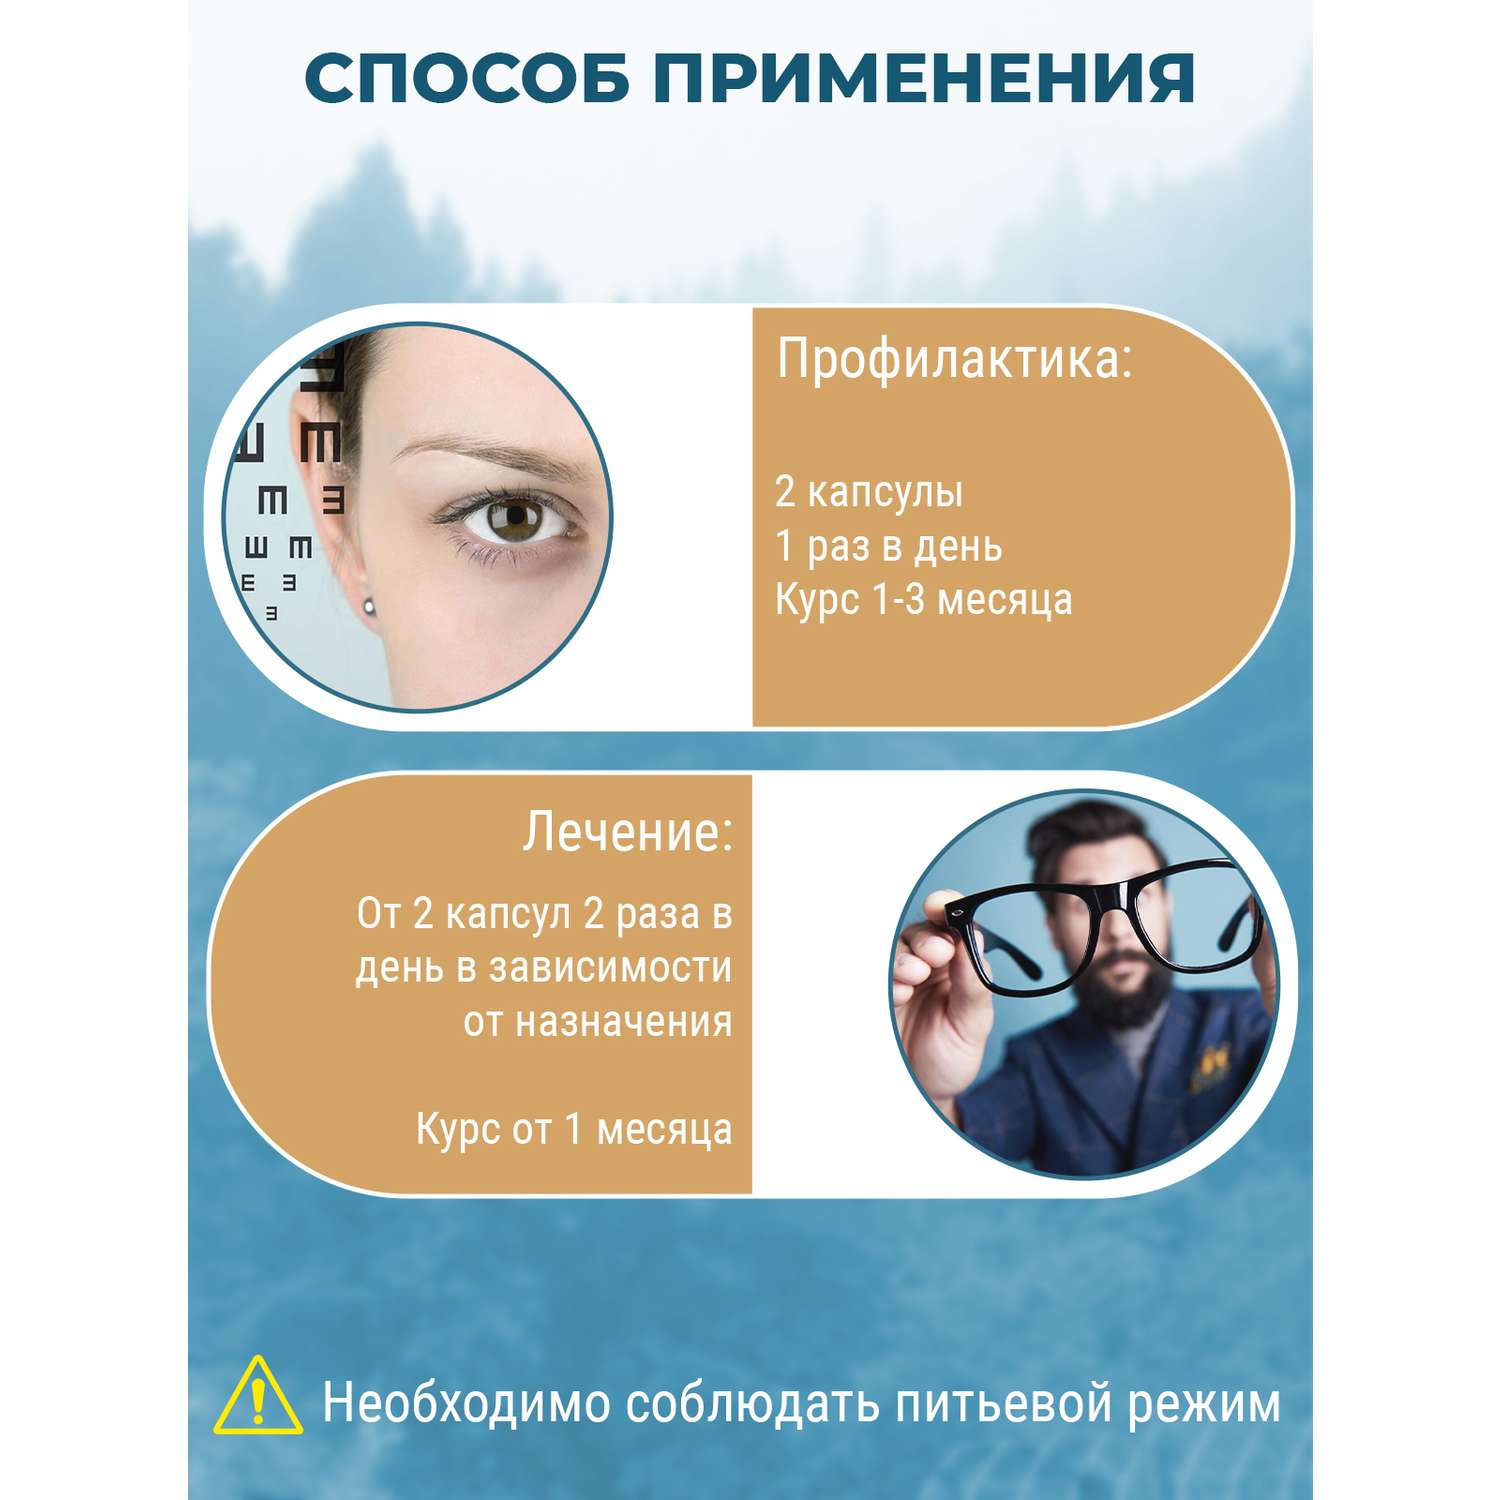 Натуральный грибной препарат Грибная аптека Сморчок для лечения заболевания глаз профилактика близорукости от катаракты 60 капсул - фото 7